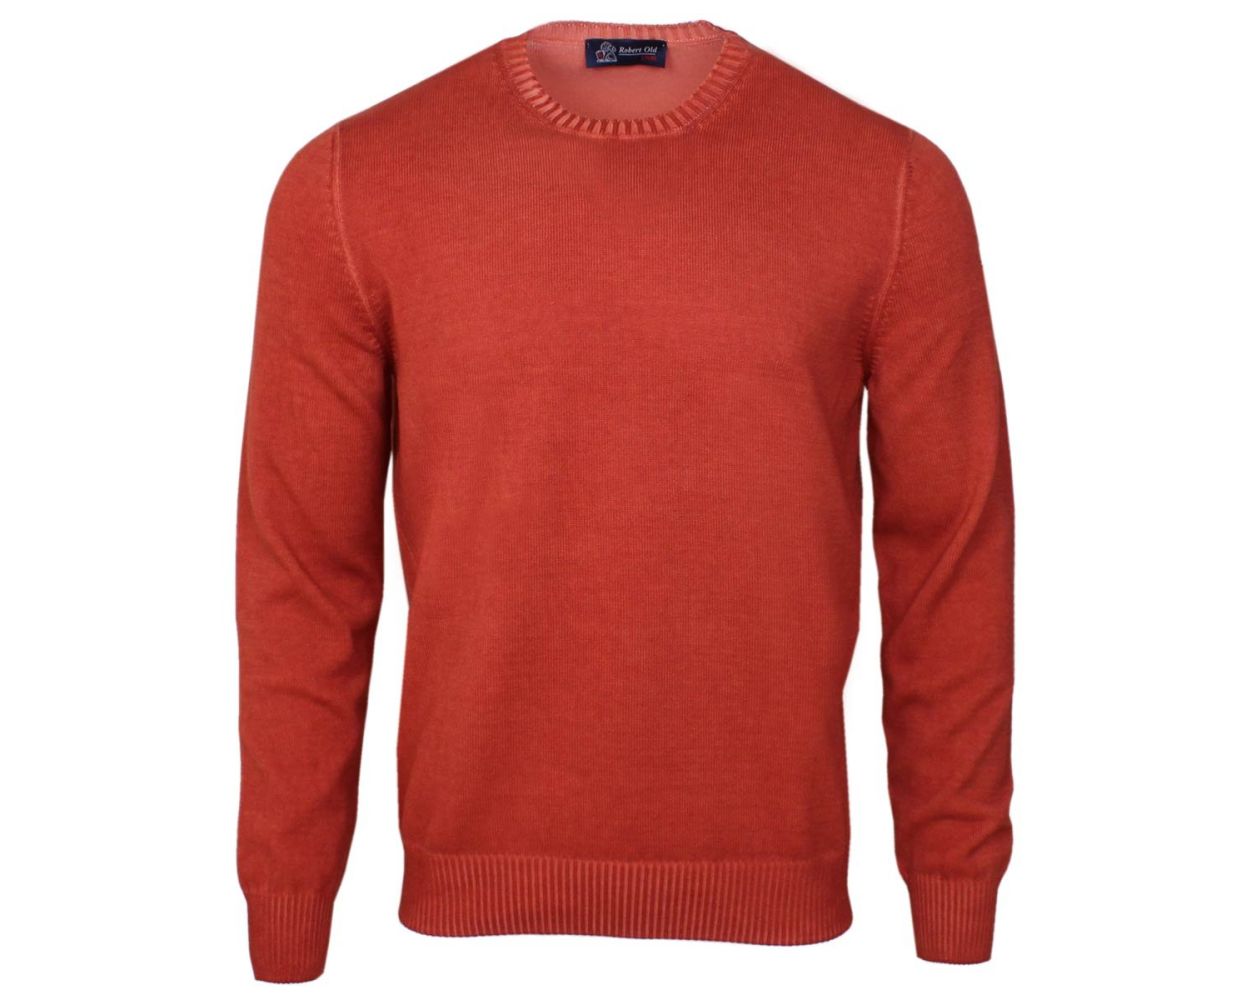 Robert Old Burnt Orange Cotton Crew Neck Sweater | Robert Old